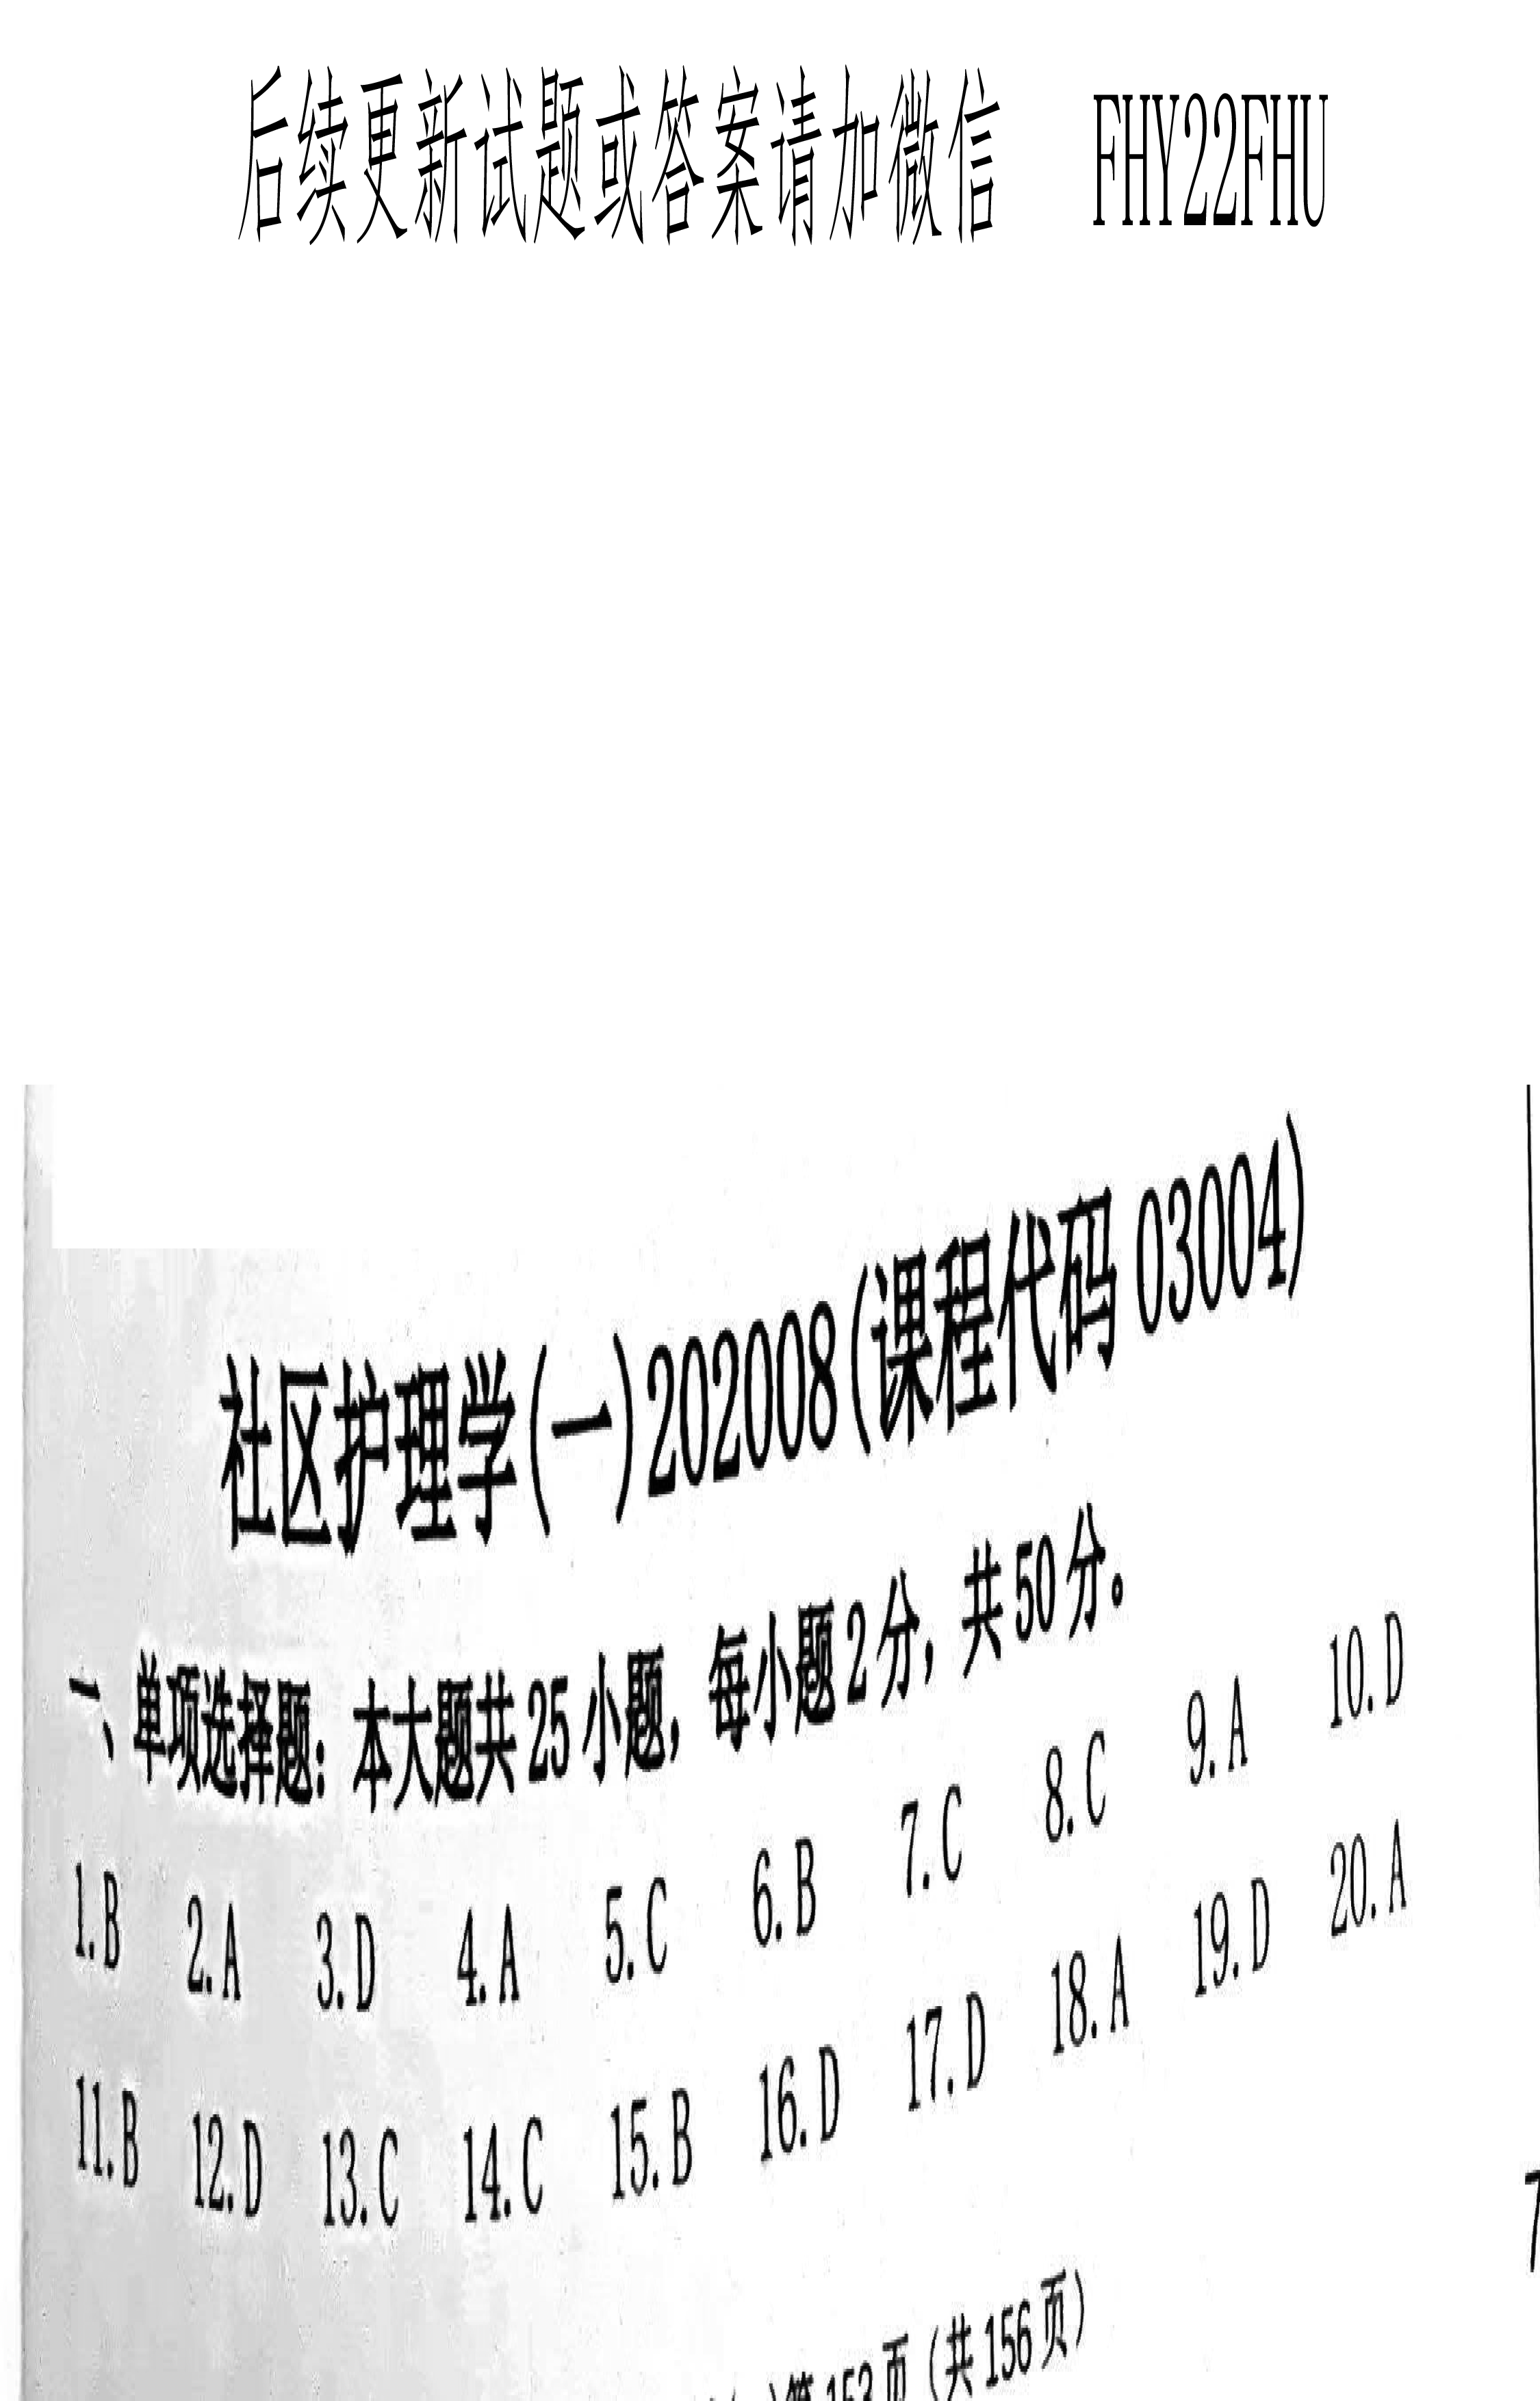 2020年08月贵州省自学考试03004社区护理学一试题及答案